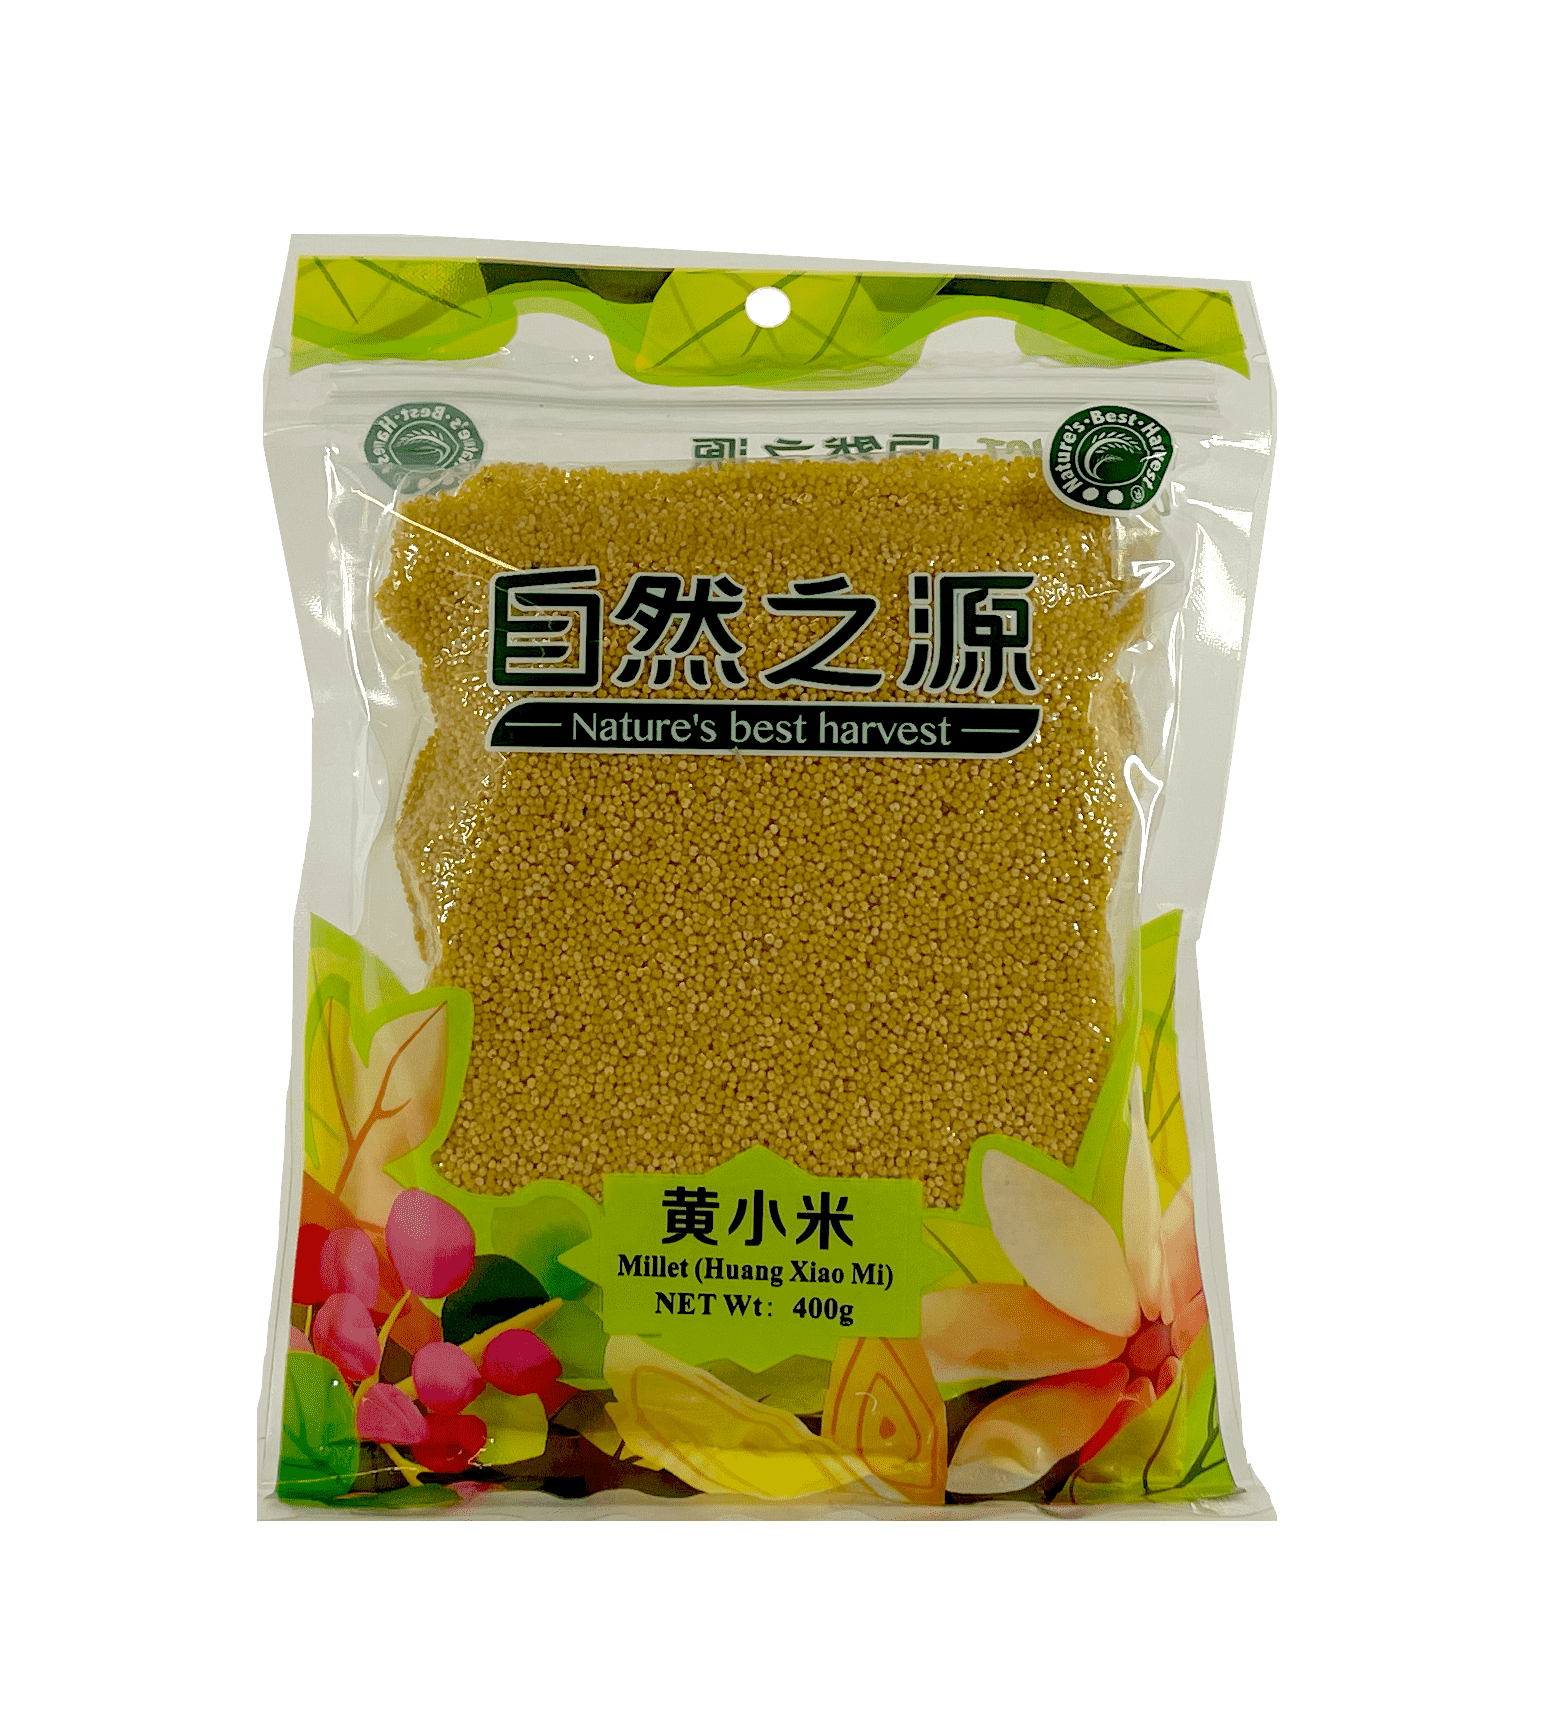 黄小米 400g 自然之源 中国